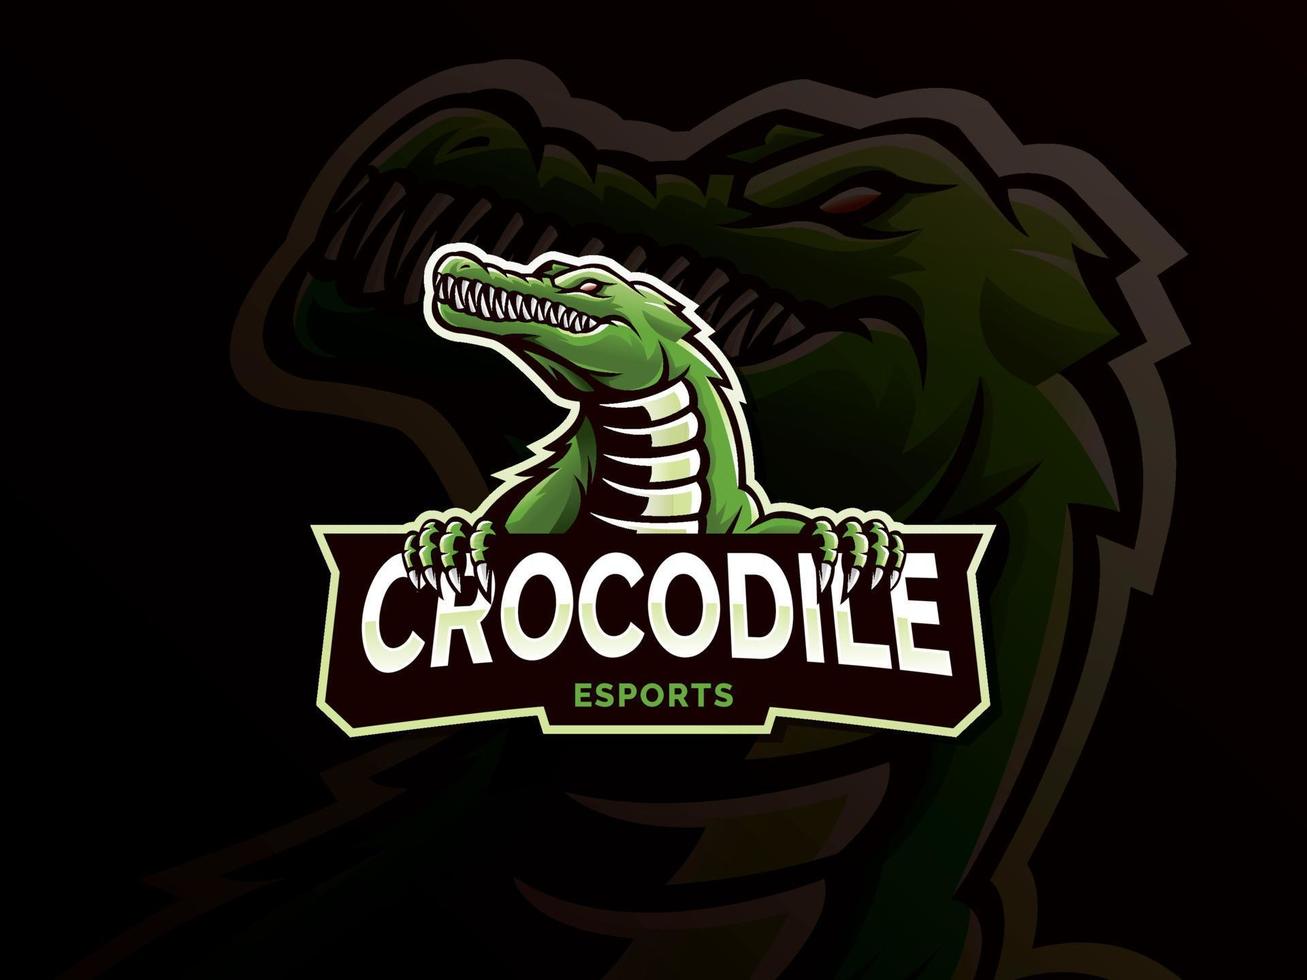 création de logo de mascotte de crocodile esports vecteur